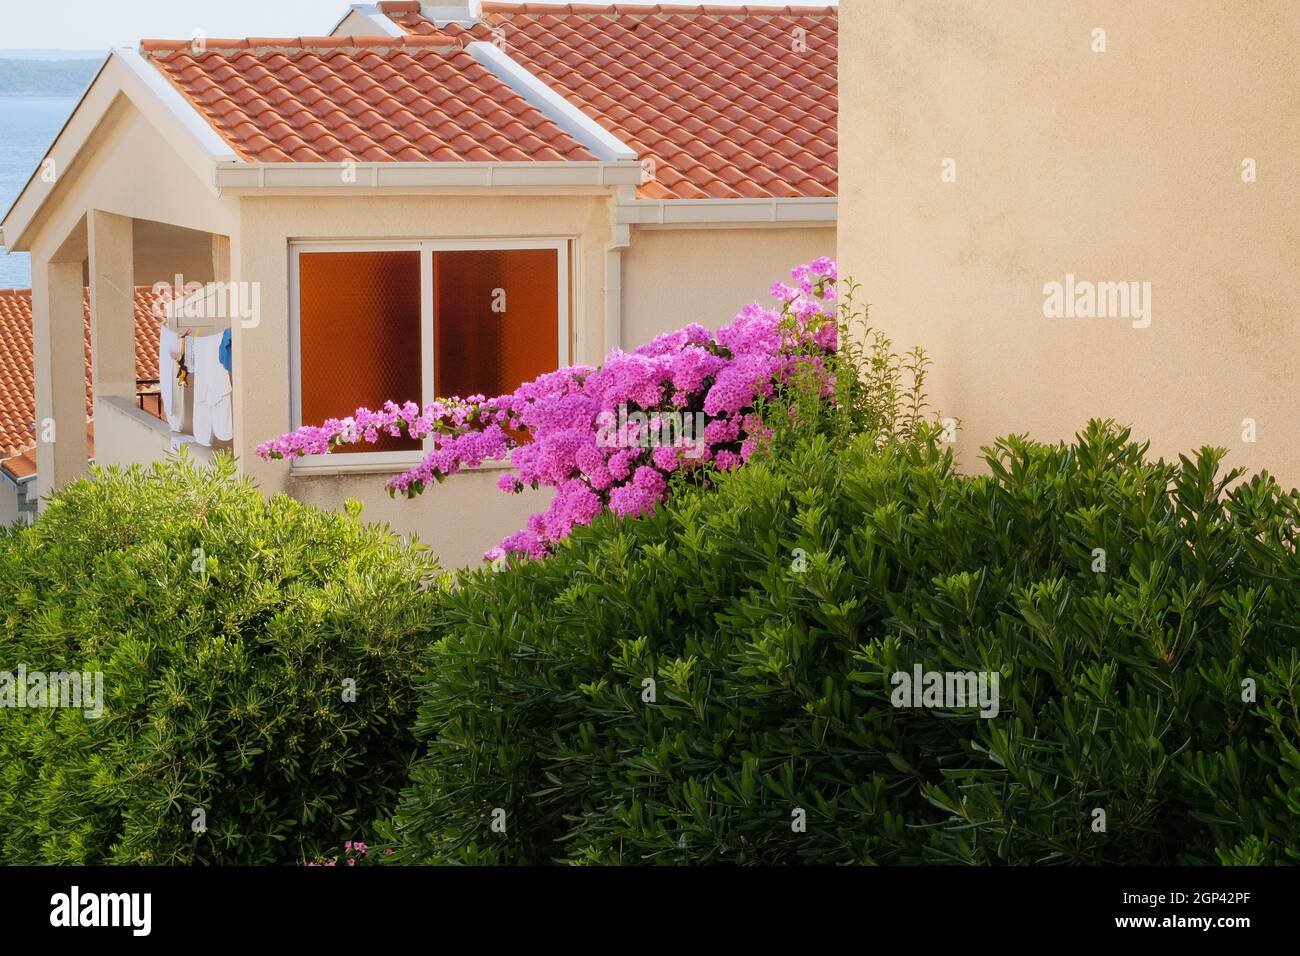 Le buisson de Bougainvillea se développe à côté de bâtiments résidentiels sur la côte de Croatie. Paysages d'été en voyage, fleurs violettes. Banque D'Images